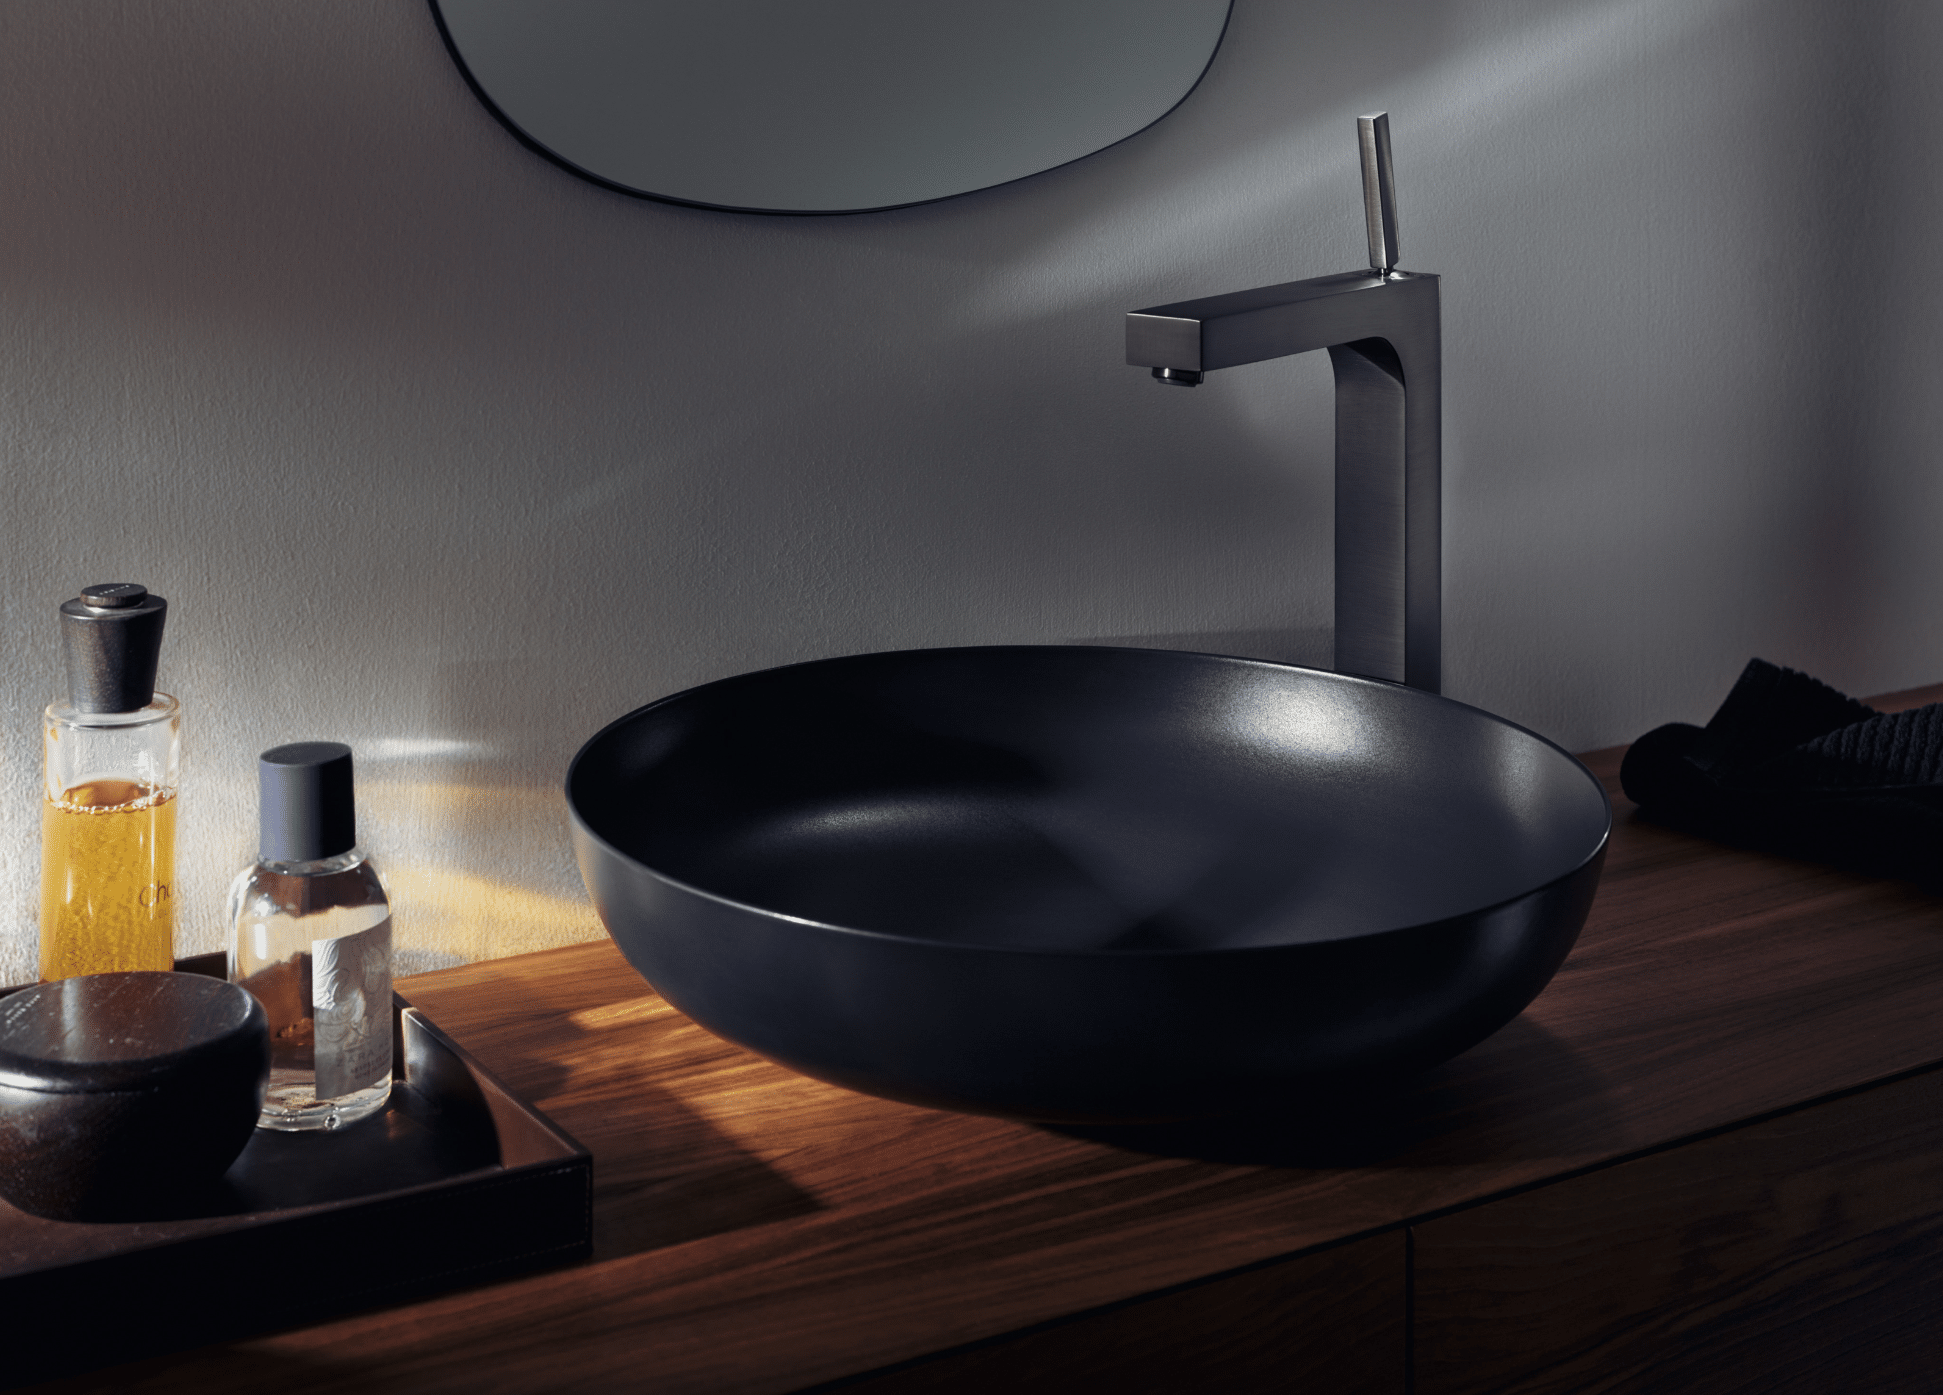 Hansgrohe zeigt eine runde, schwarze Waschschüssel mit glänzend brauner Armatur auf einem Waschtisch in Holzoptik.